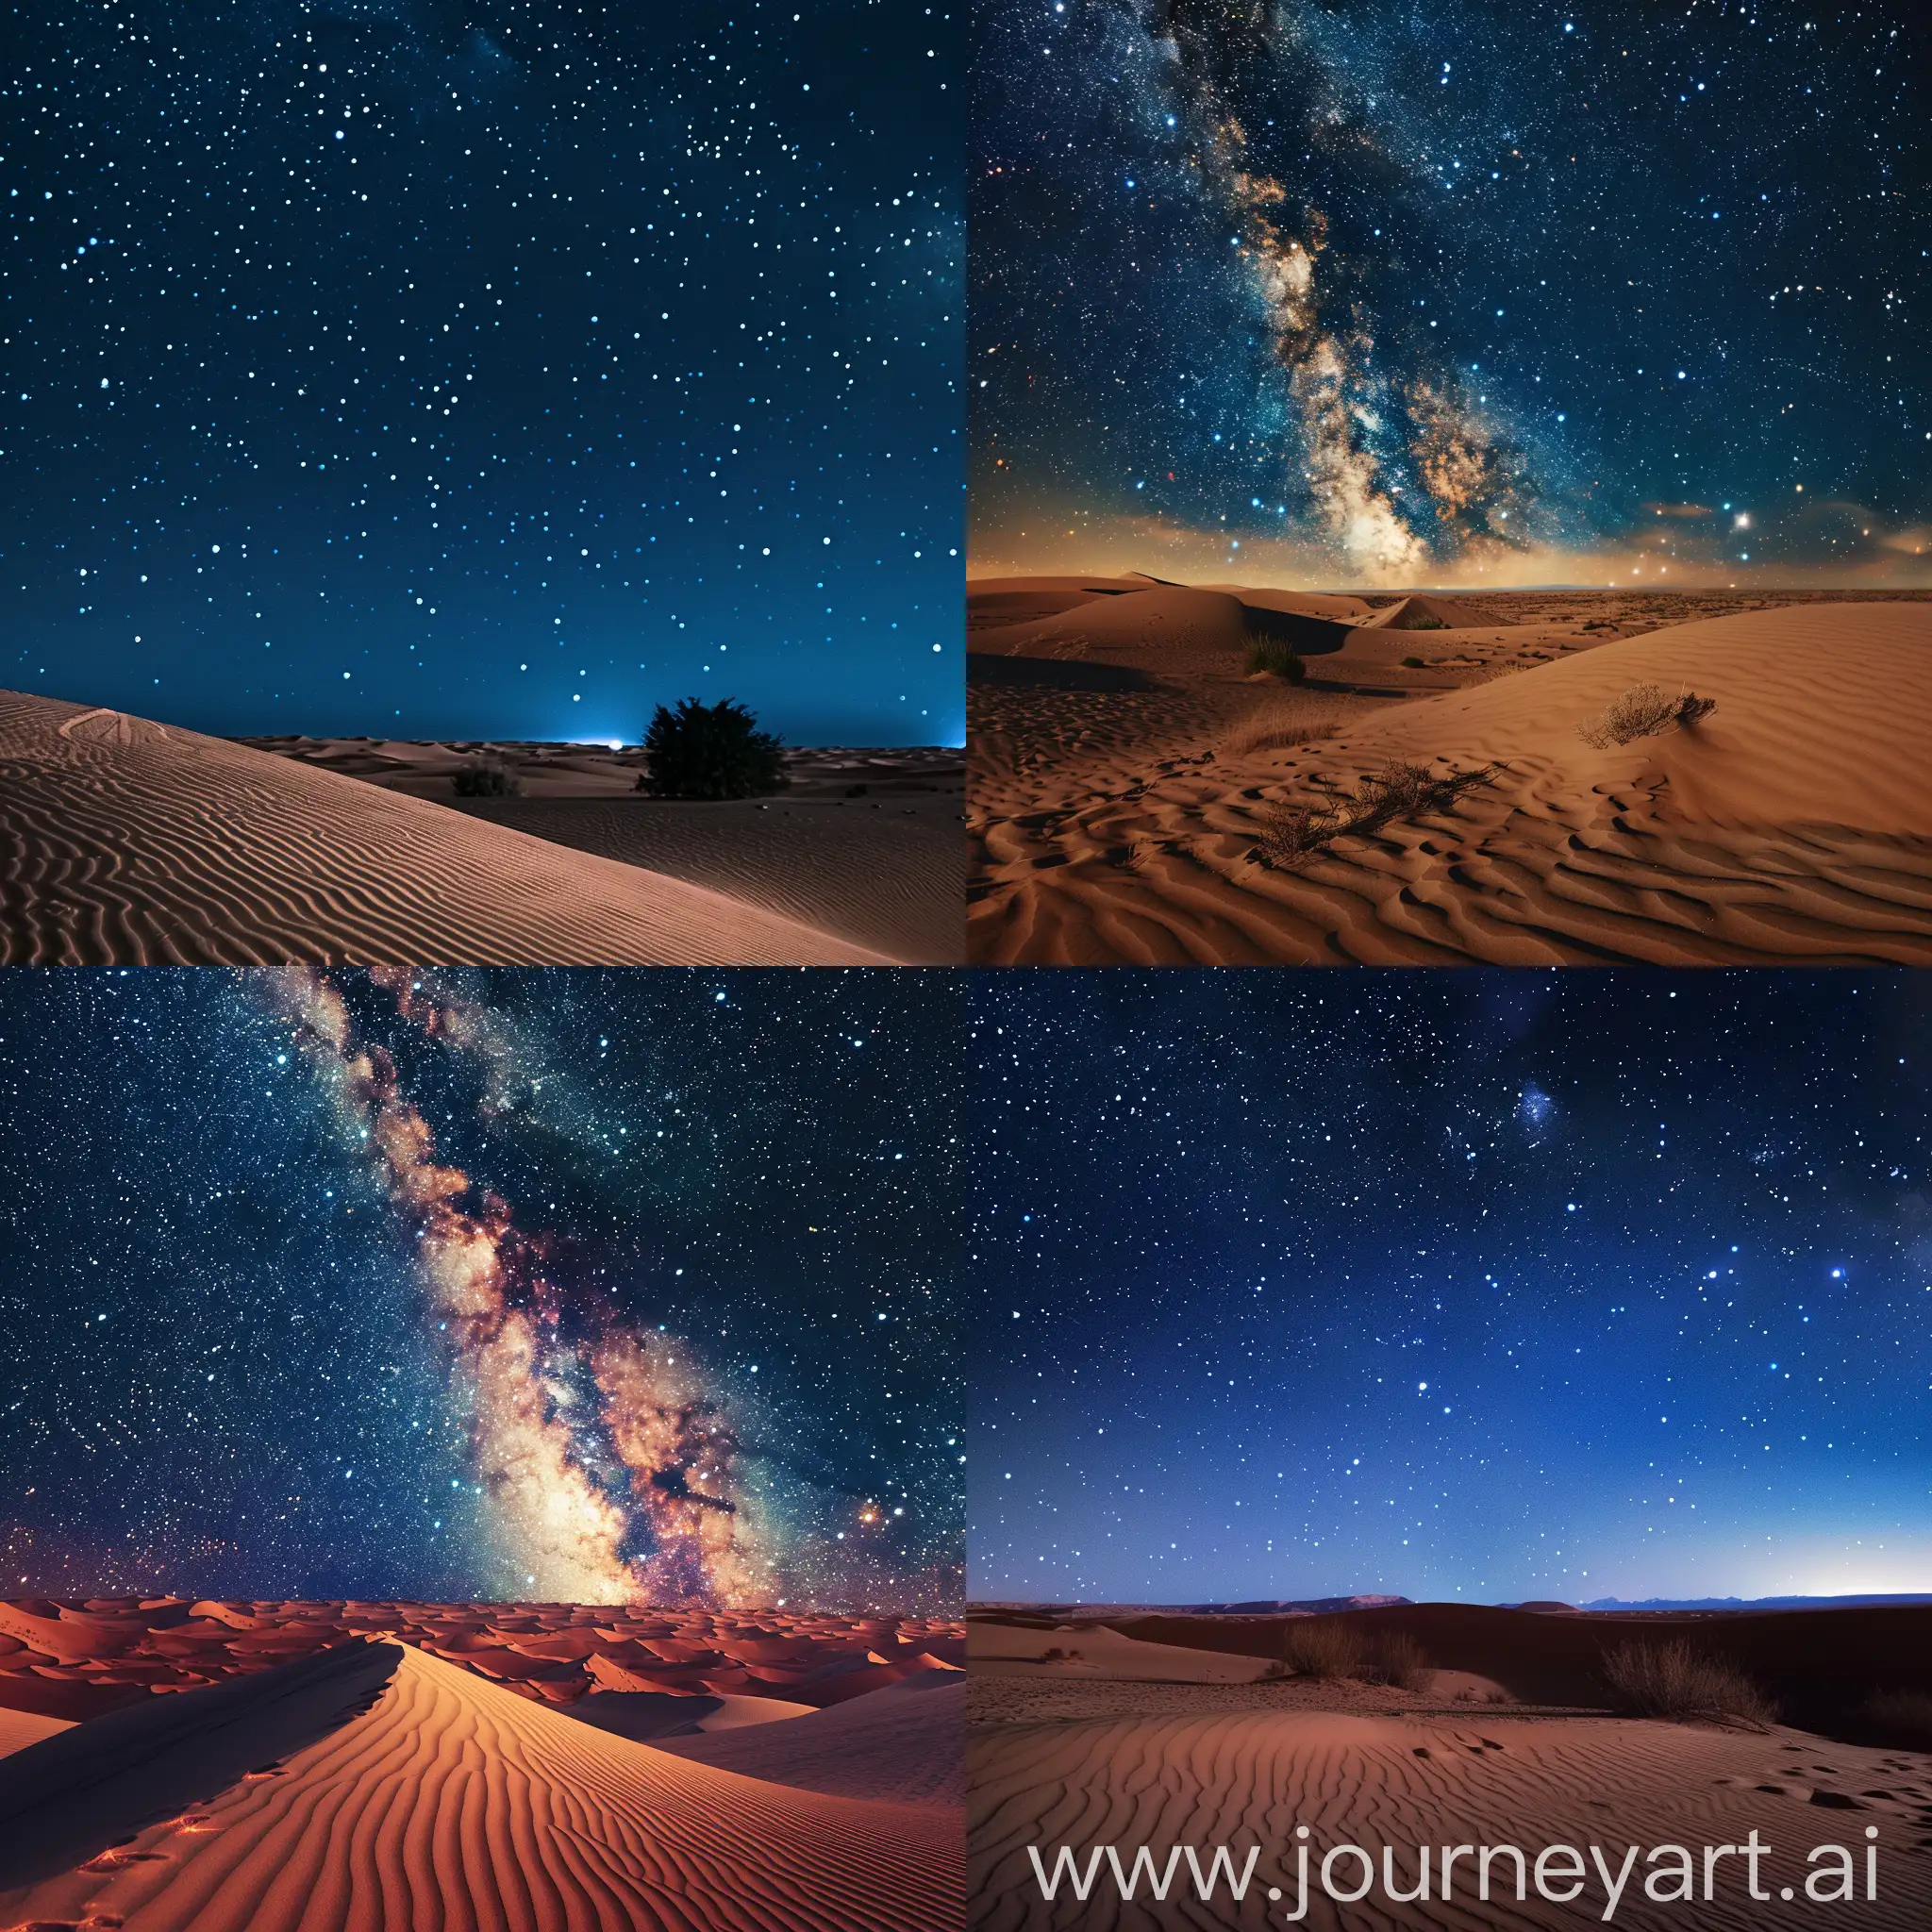 Surreal-Desert-Landscape-under-a-Starry-Sky